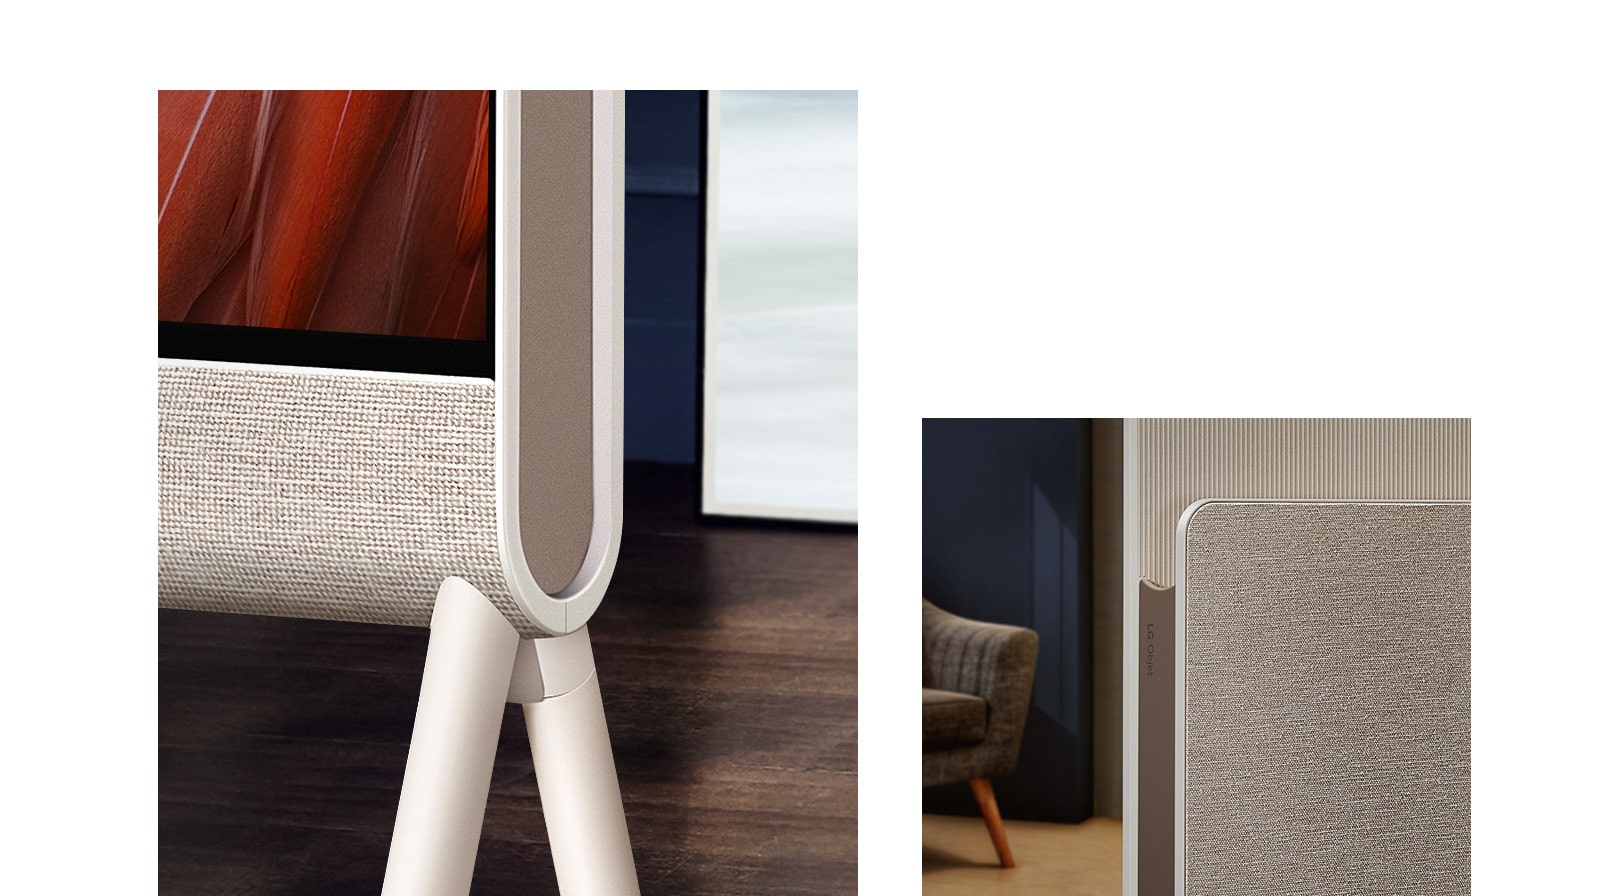 Hình ảnh cận cảnh Posé từ phía trước tập trung vào lớp vải, với sàn gỗ ở hình nền. Hình ảnh cận cảnh lớp vải trên Kệ sách báo và logo LG Objet, với một chiếc ghế bành ở hình nền.